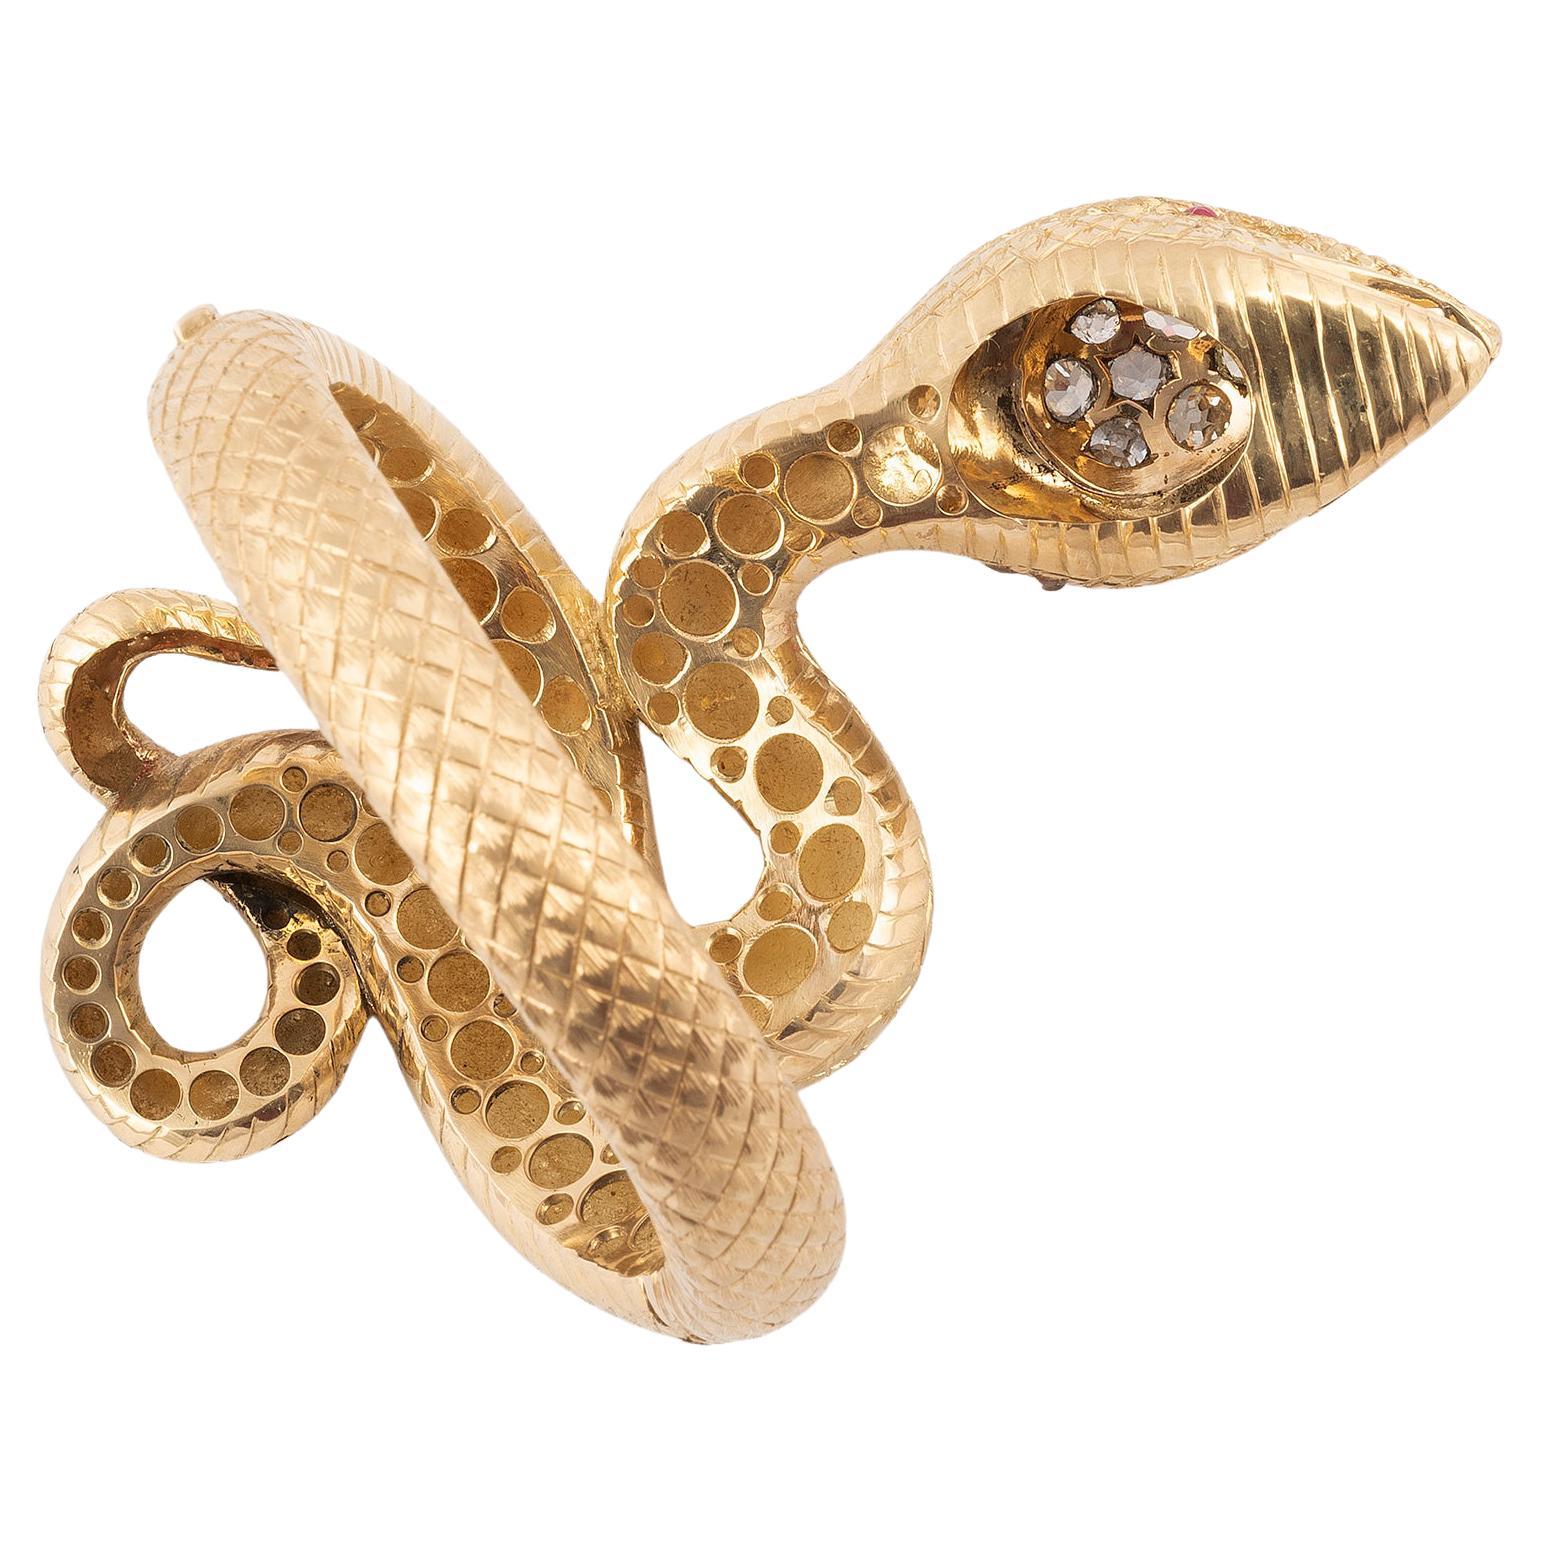 Large bracelet bangle conçu comme un grand serpent avec des diamants de taille ancienne d'environ 3,5ct sur la tête et des yeux en rubis.
Longueur : 12 cm
Diamètre 6.5 cm.  
Poids : 153 gr.